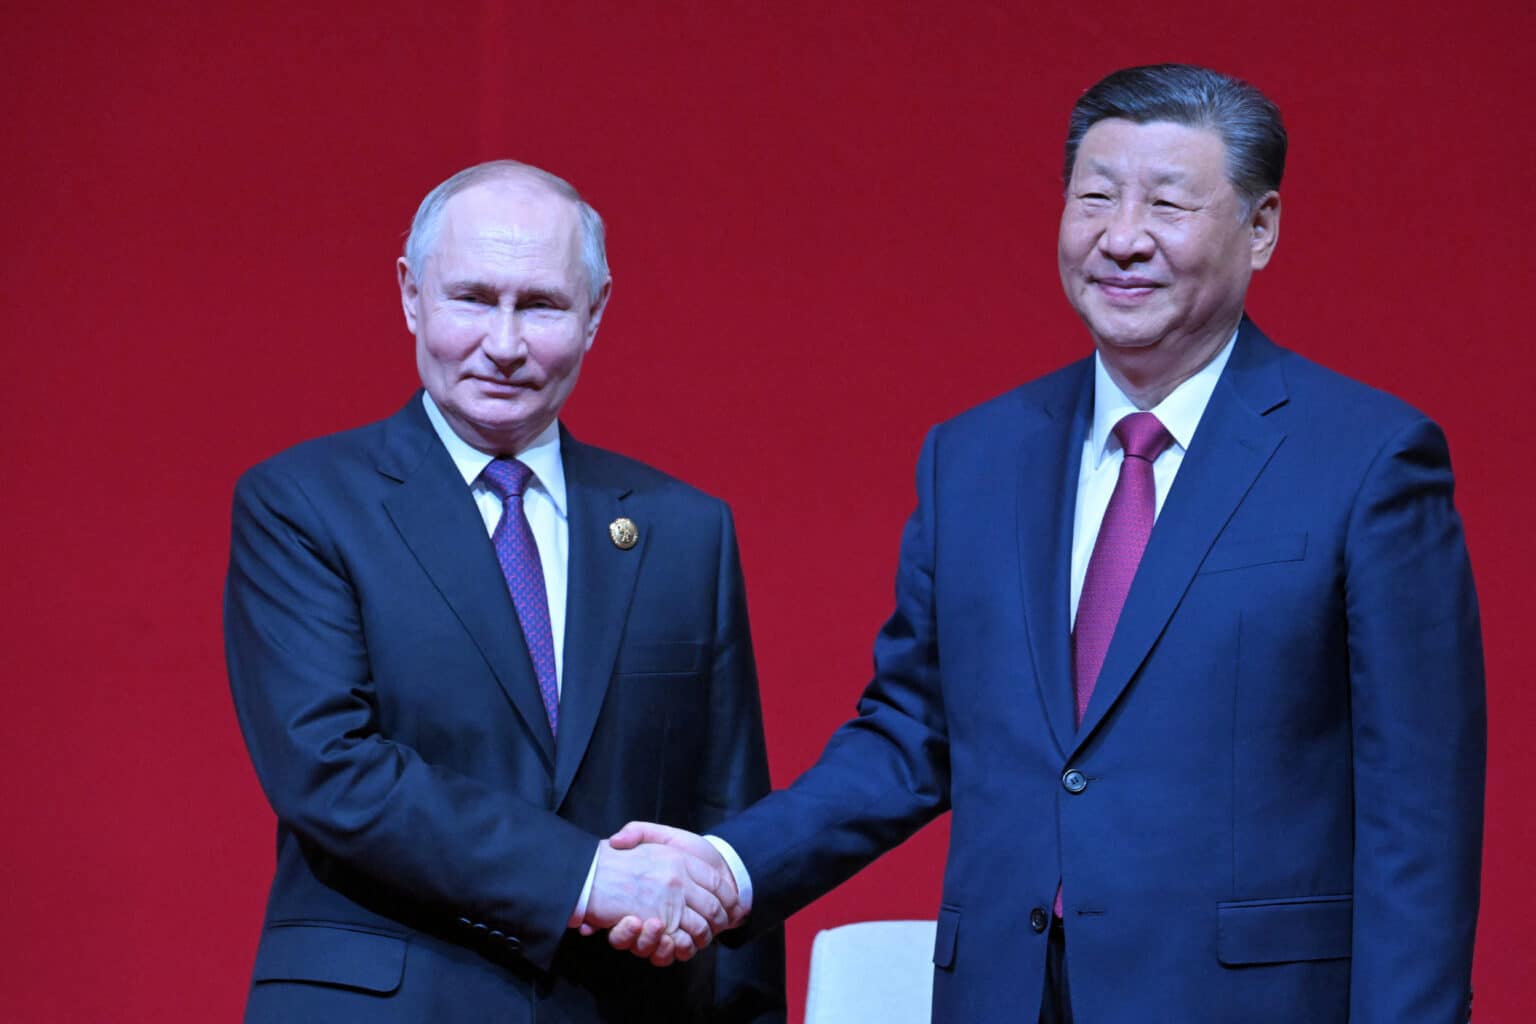 פוטין נפגש עם נשיא סין: “שיתוף הפעולה בינינו שומר על היציבות העולמית”